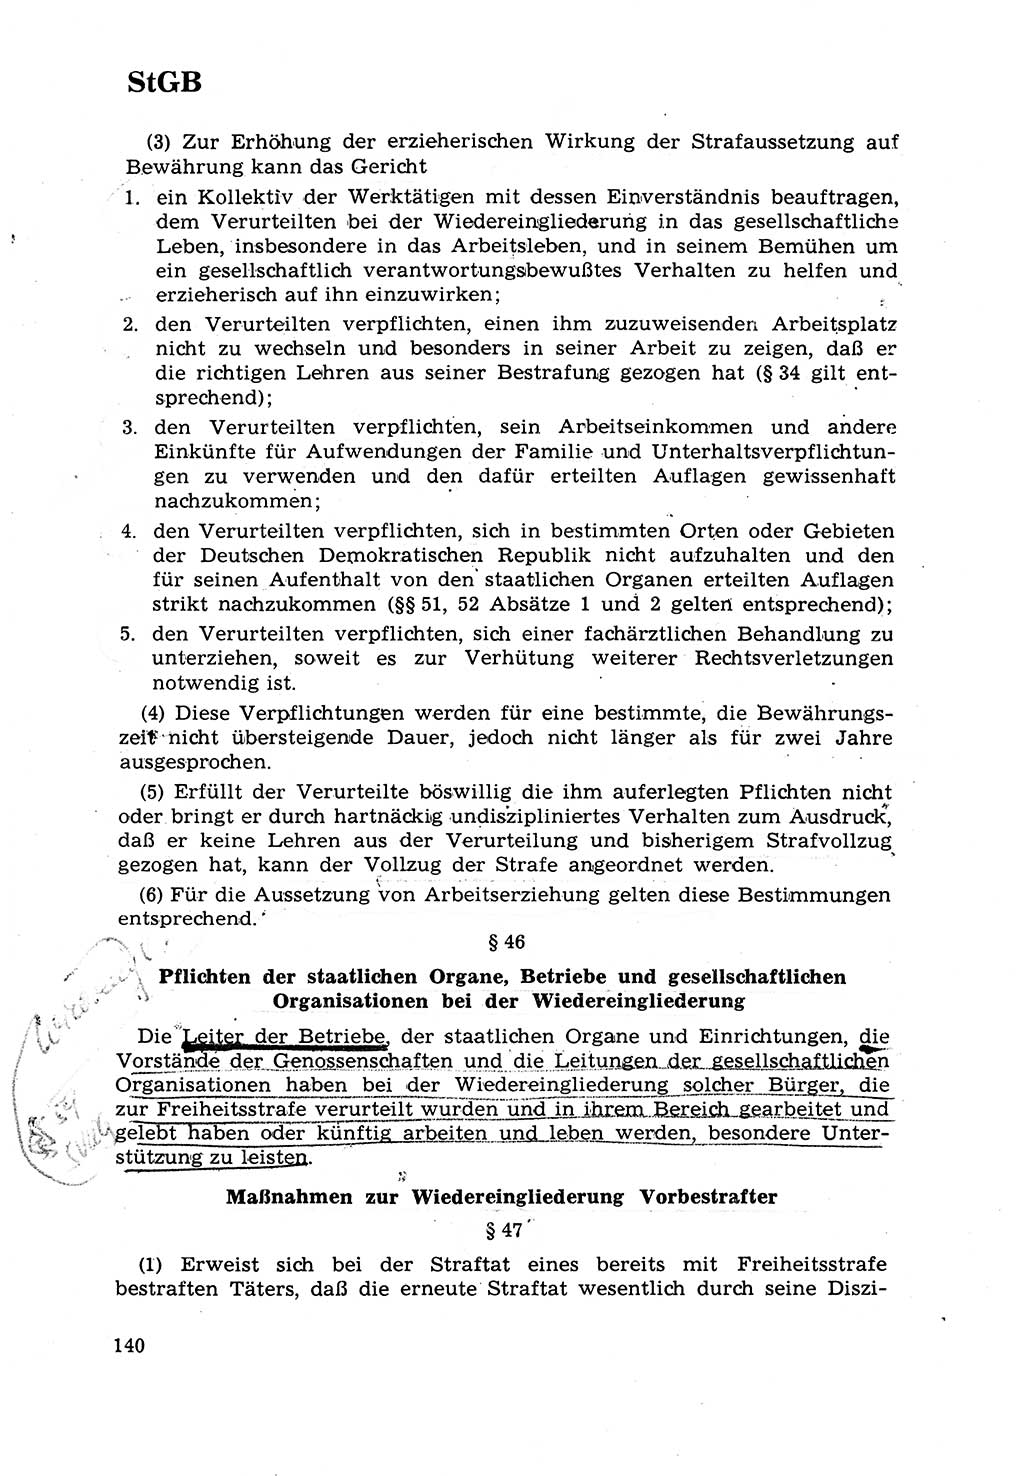 Strafrecht [Deutsche Demokratische Republik (DDR)] 1968, Seite 140 (Strafr. DDR 1968, S. 140)